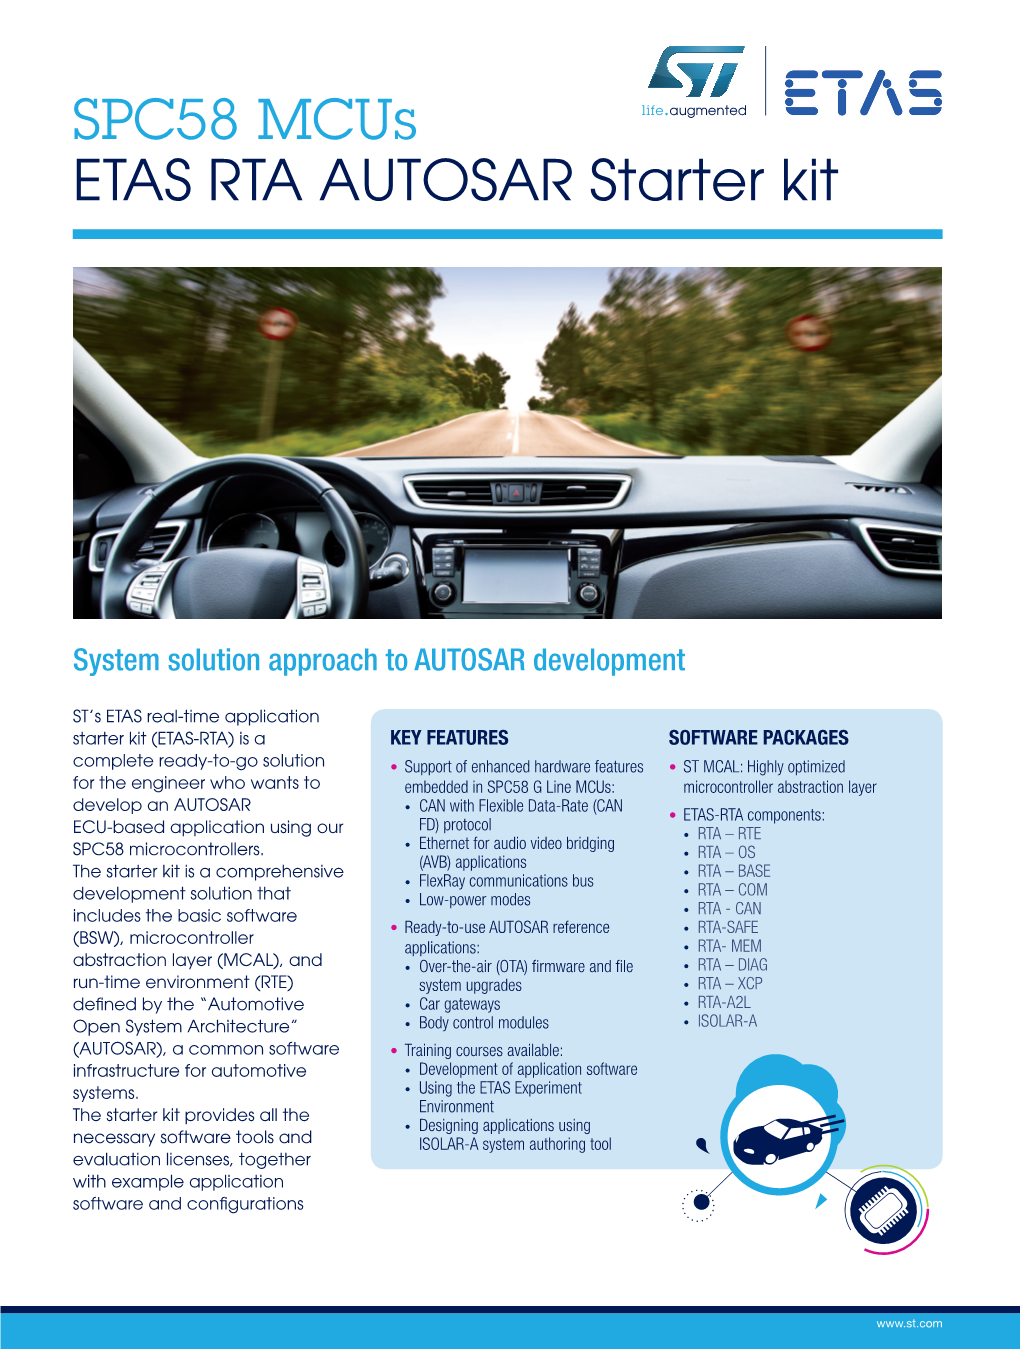 ETAS RTA AUTOSAR Starter Kit